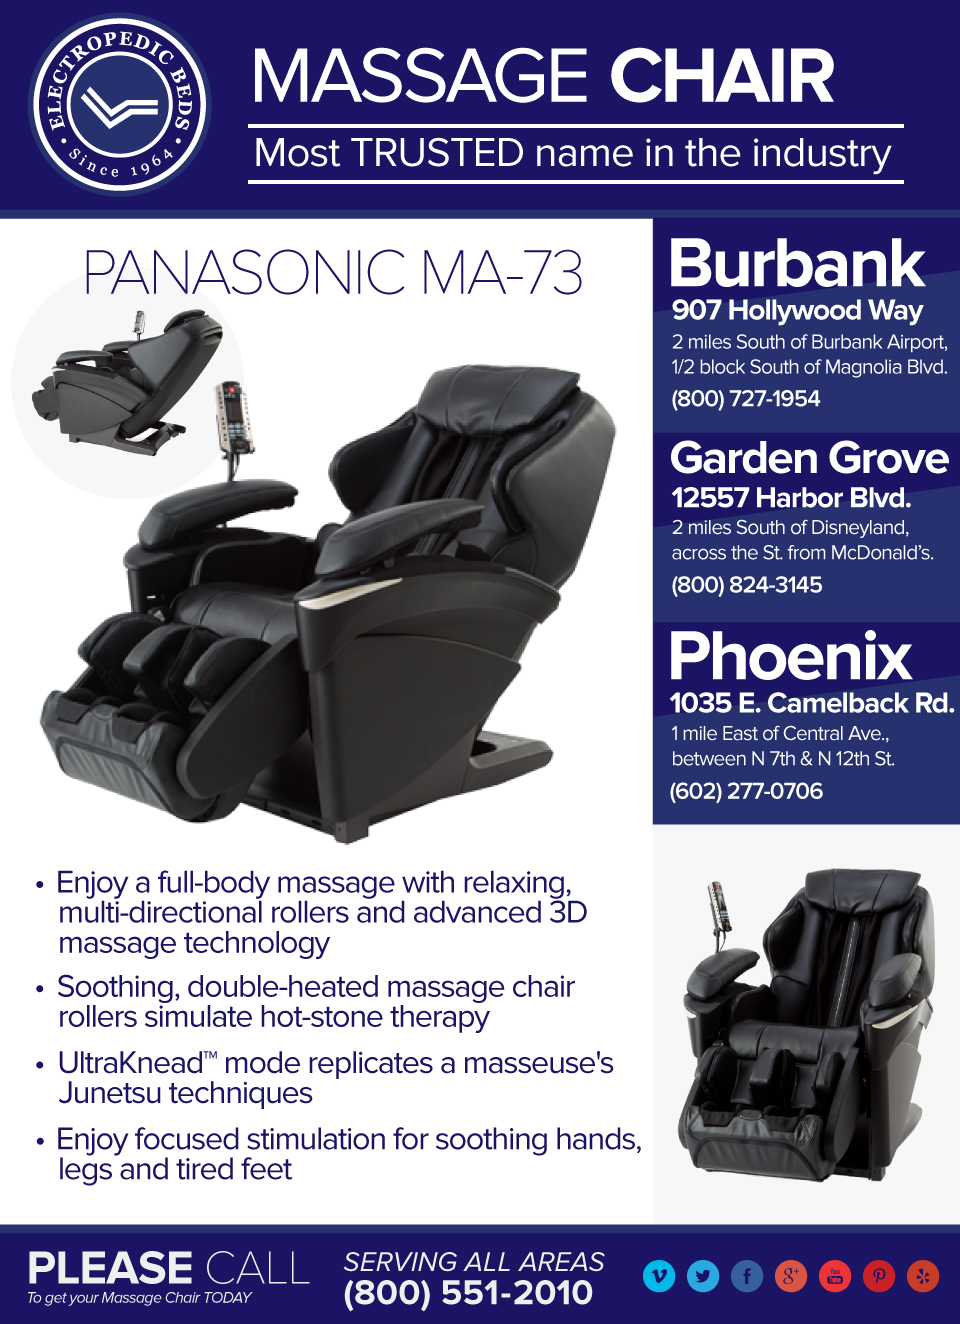 Panasonic MA73 massage chair